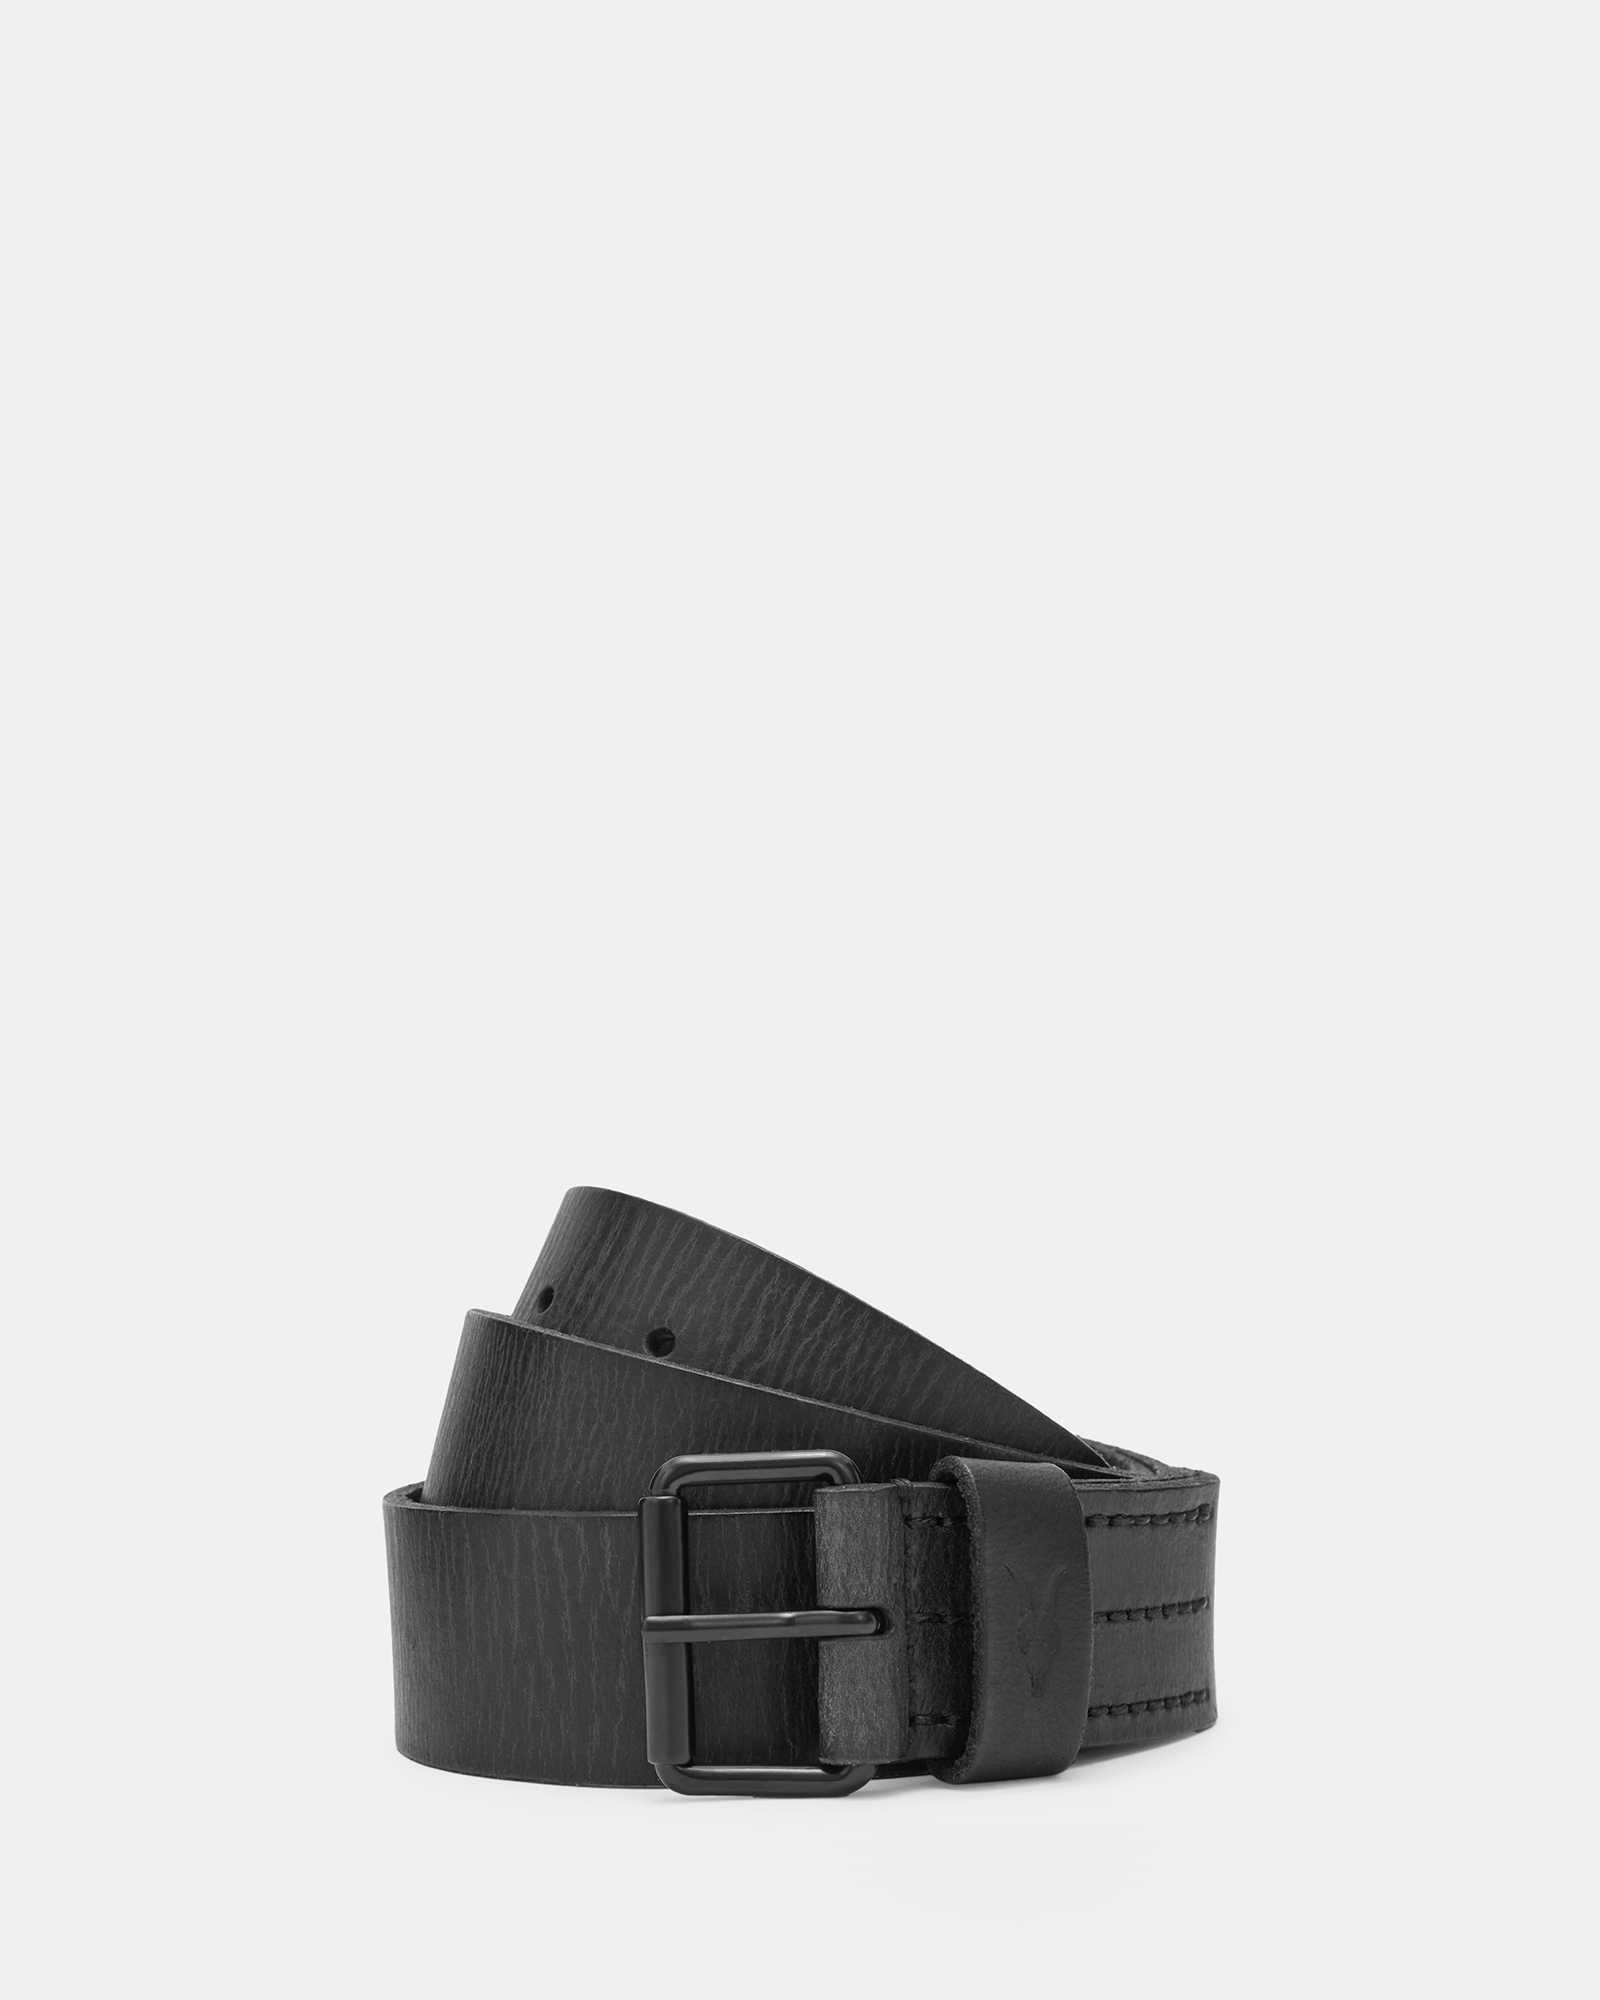 AllSaints Men's Leather Classic Dunston Five Hole Hip Belt, Black, Size: 30